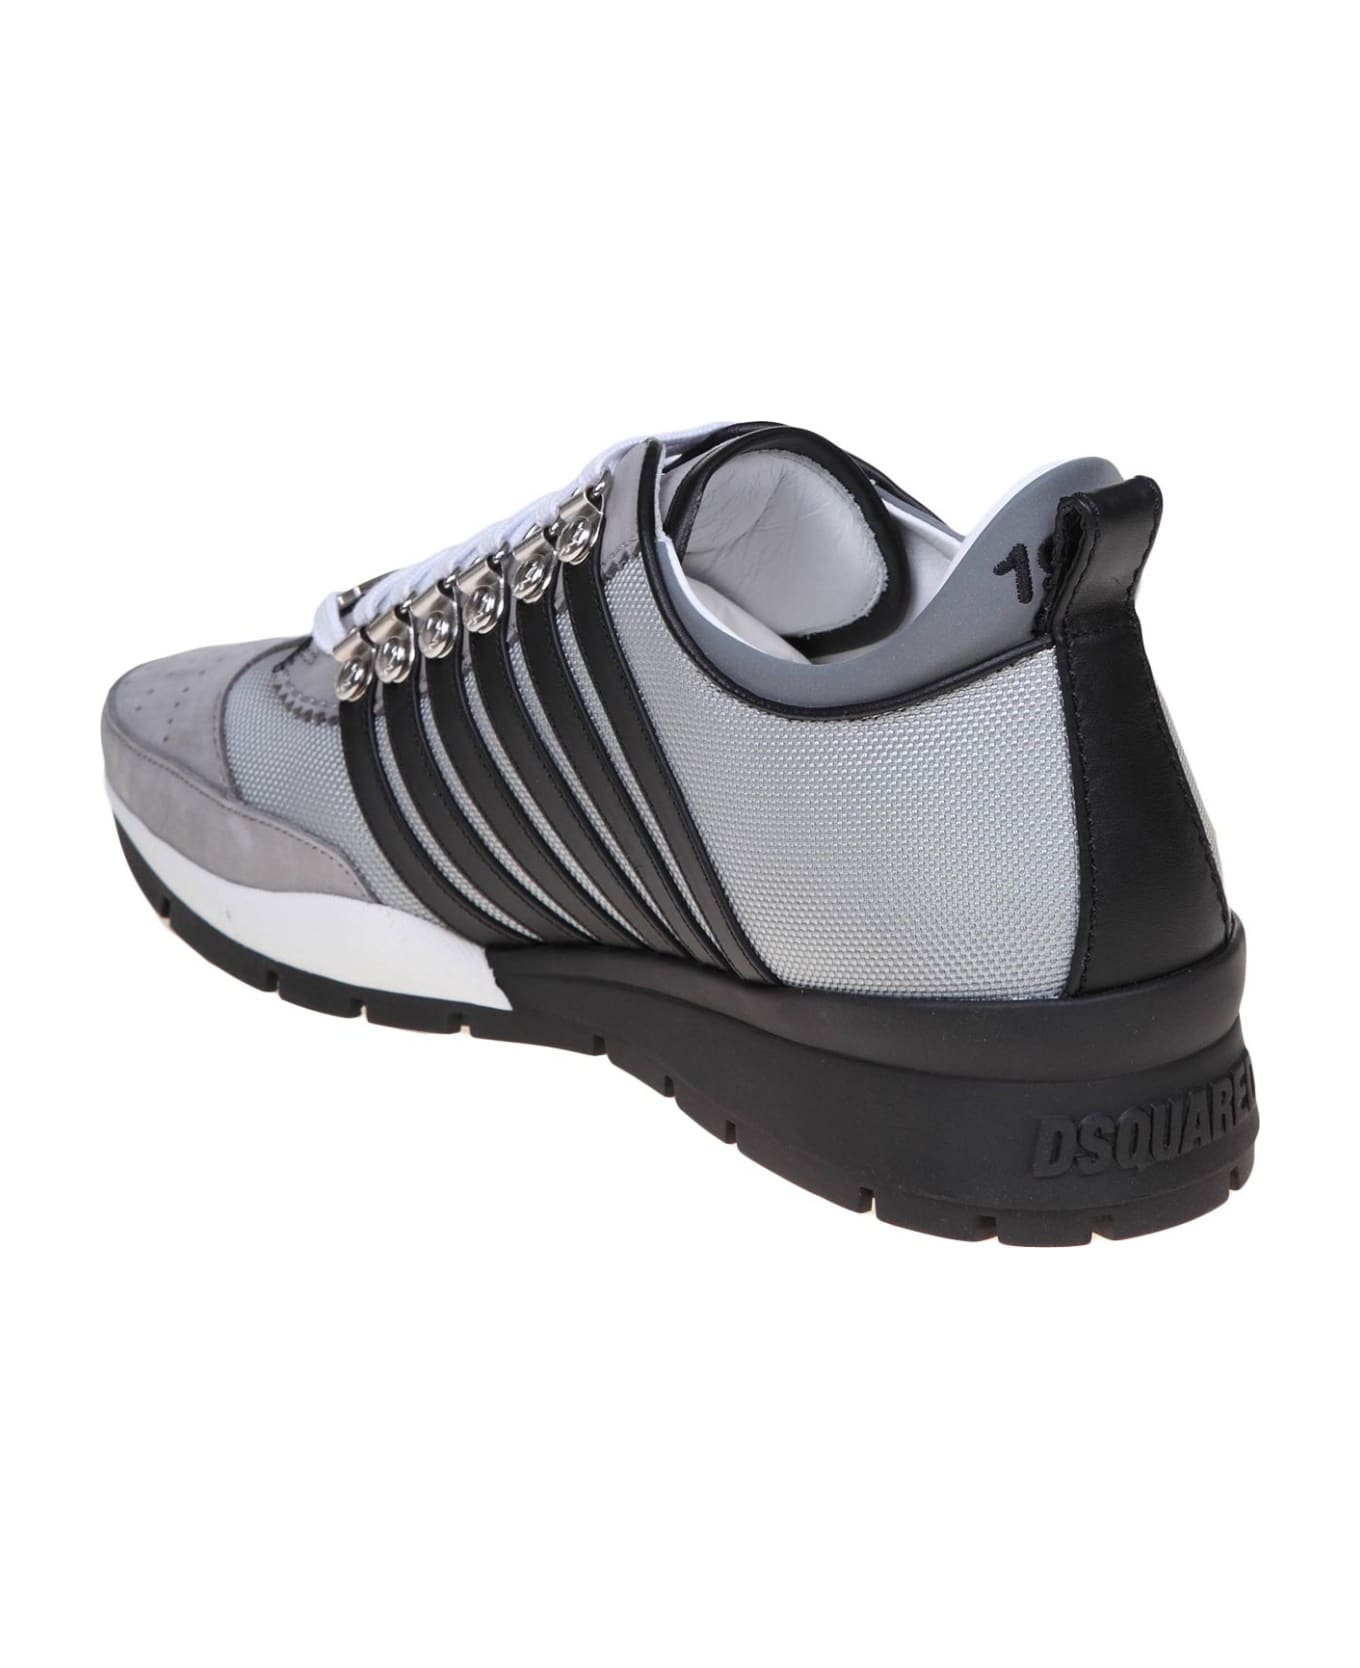 Dsquared2 Legendary Sneakers - Gray / Black スニーカー